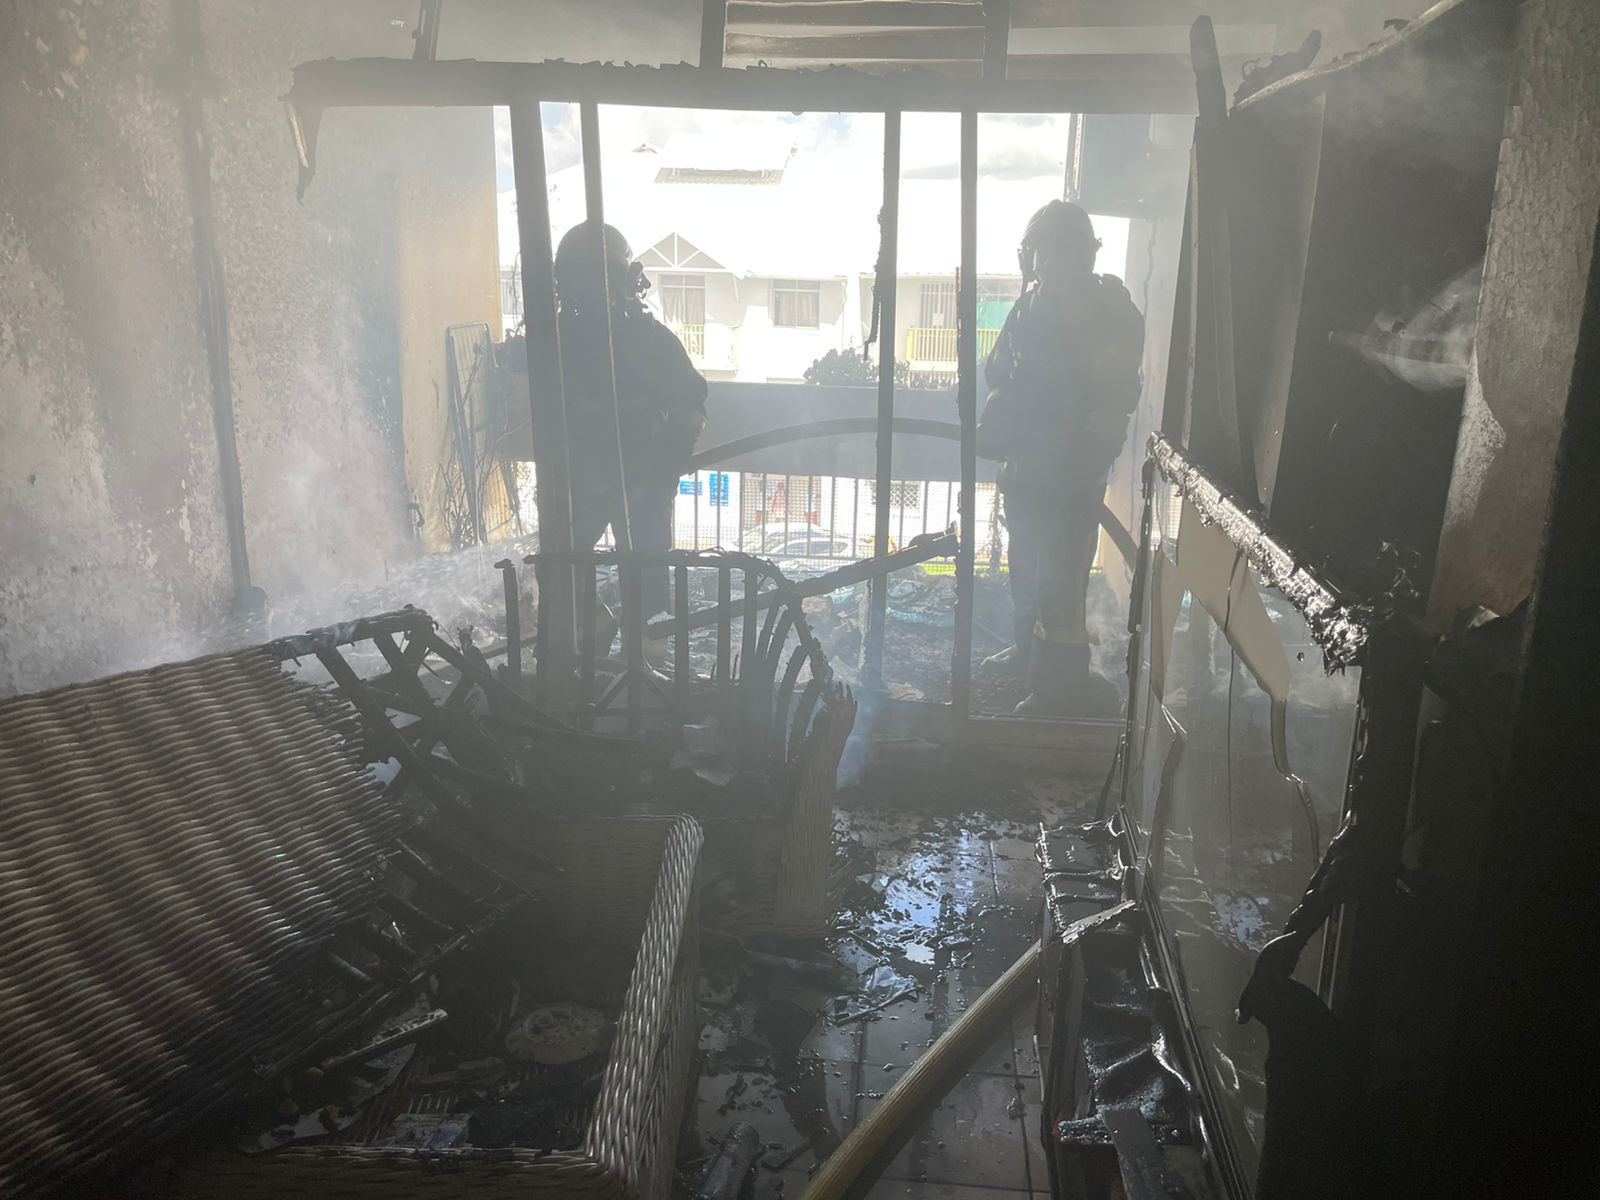     Un violent feu d’appartement s’est déclenché aux Abymes

